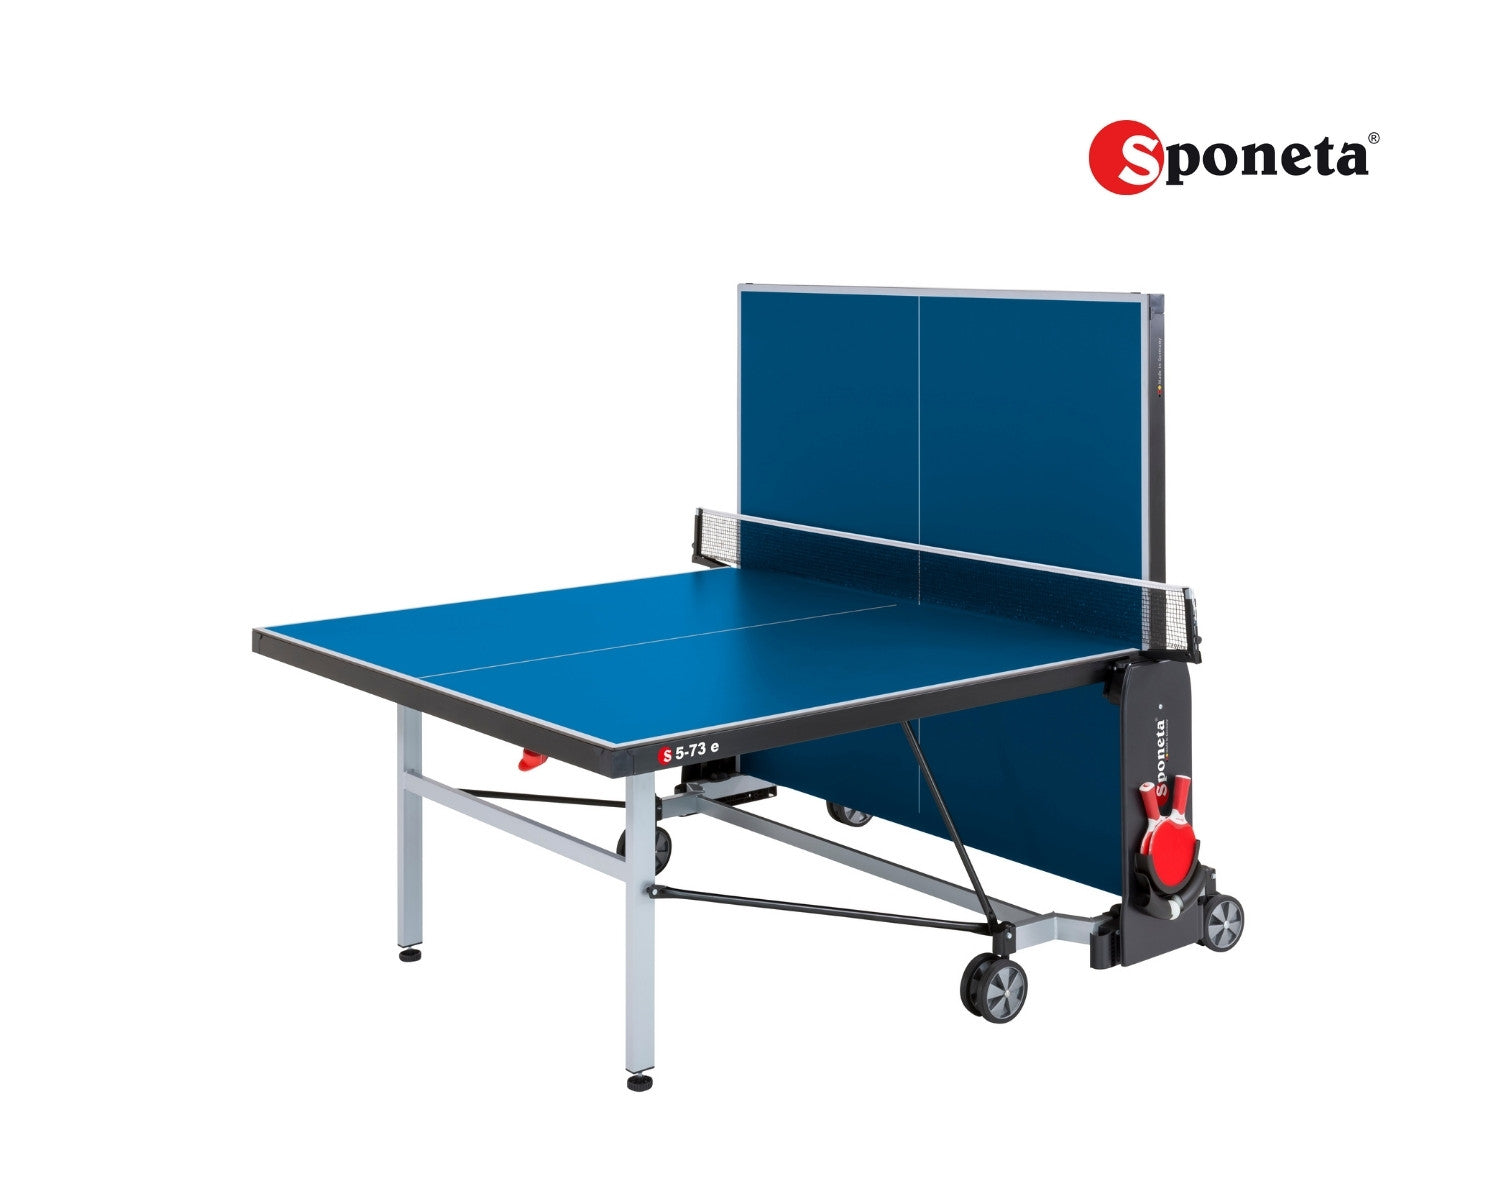 Sponeta Tavolo da Ping Pong Outdoor S 5-73 e